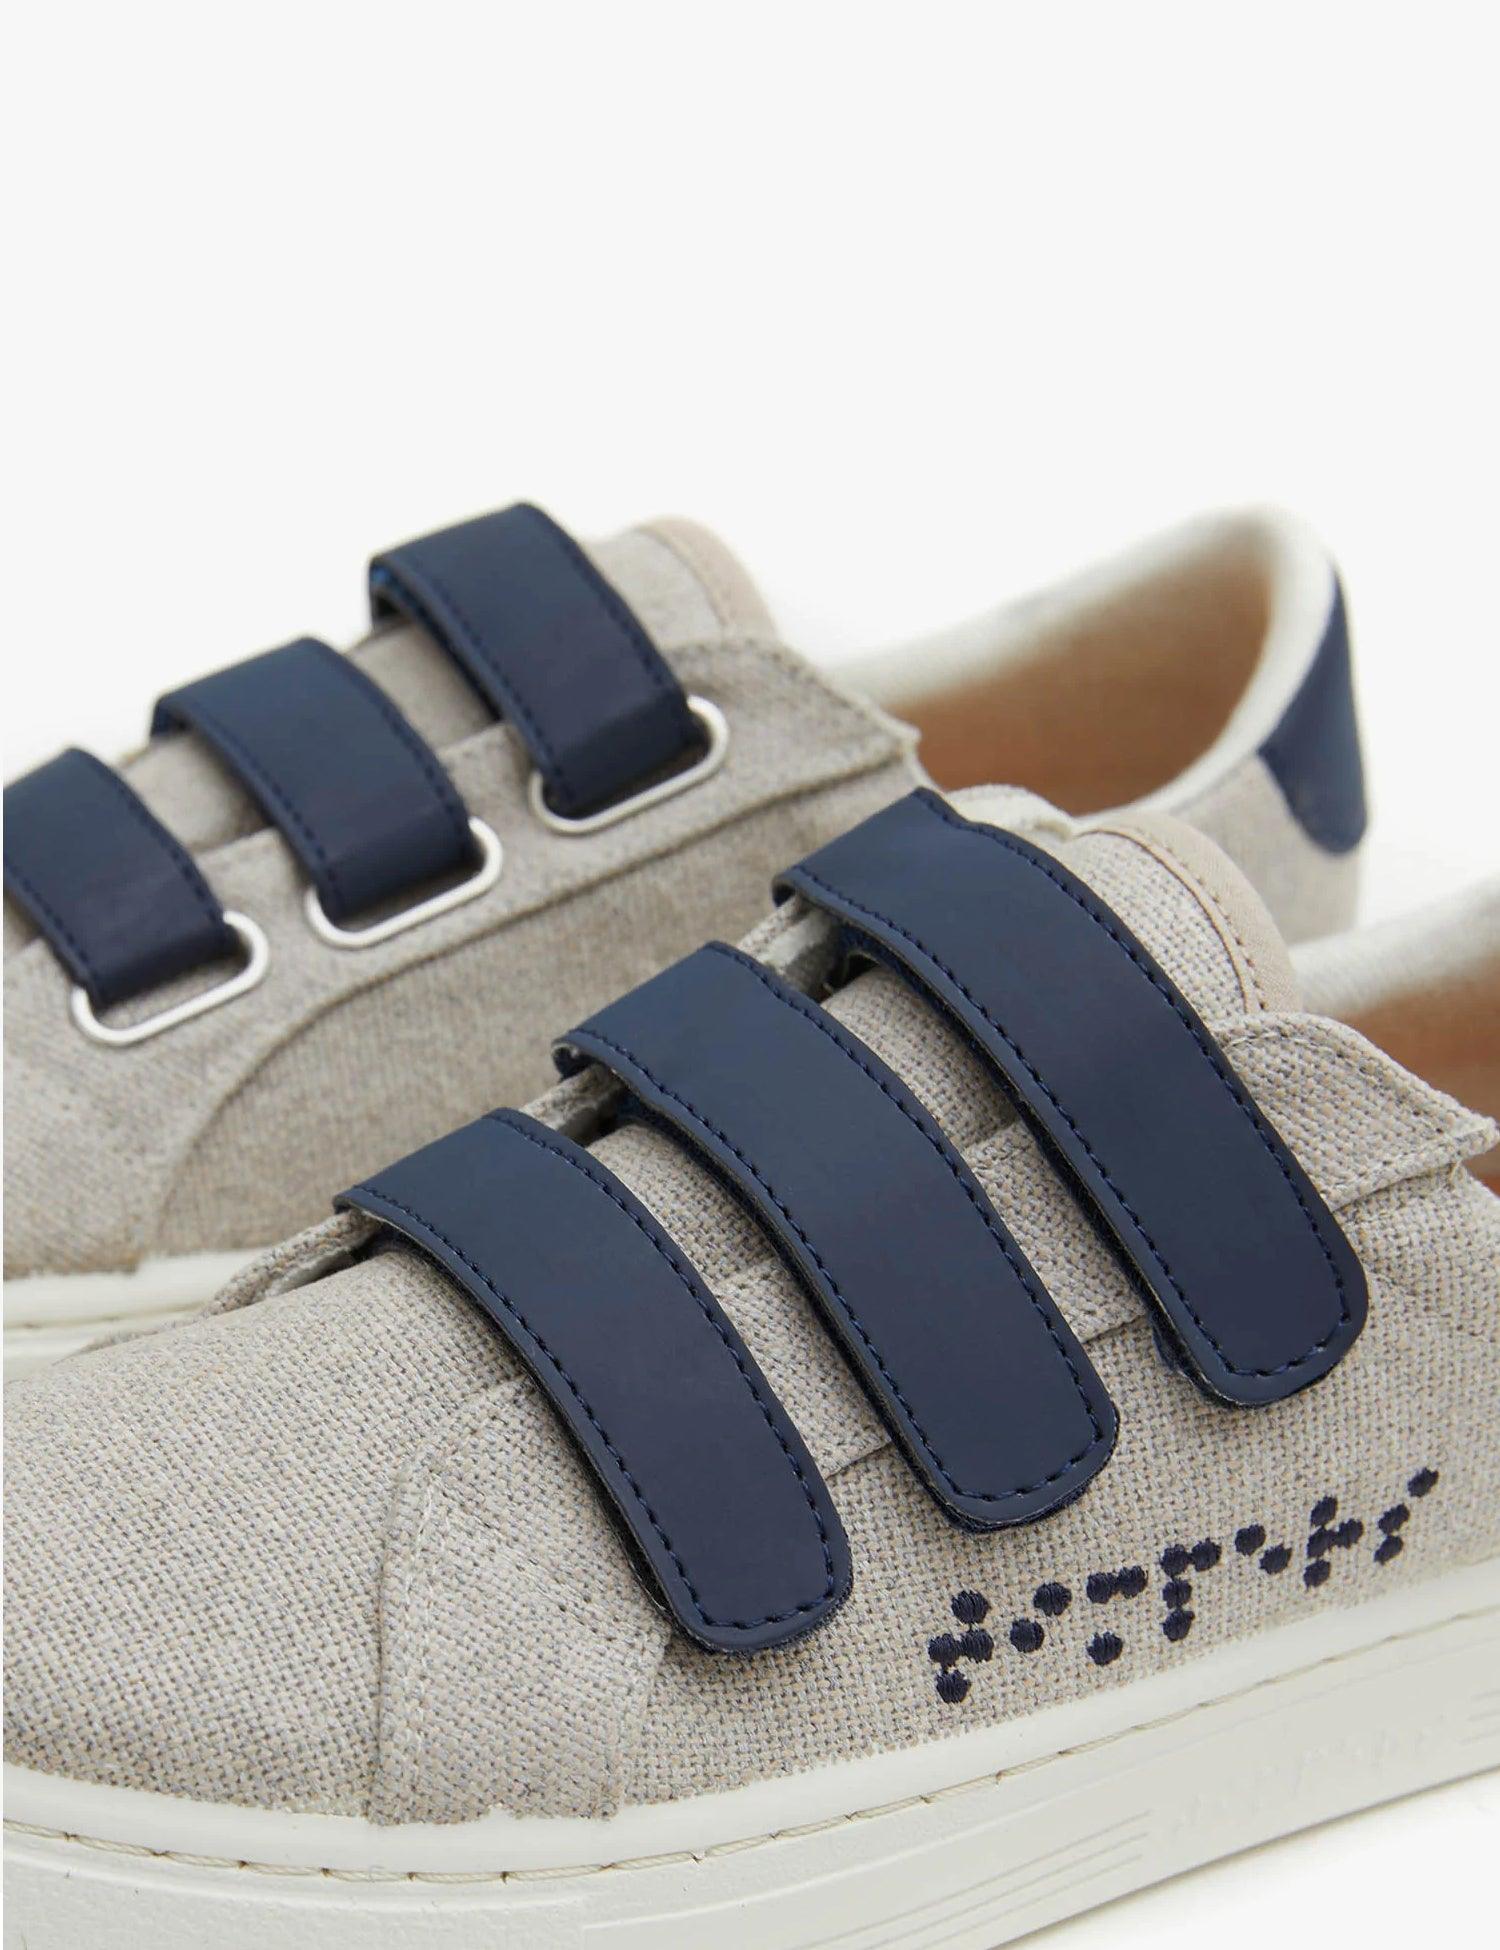 Velcro Crude de color gris, con suela blanca y 3 tiras de velcro en color azul marino. 